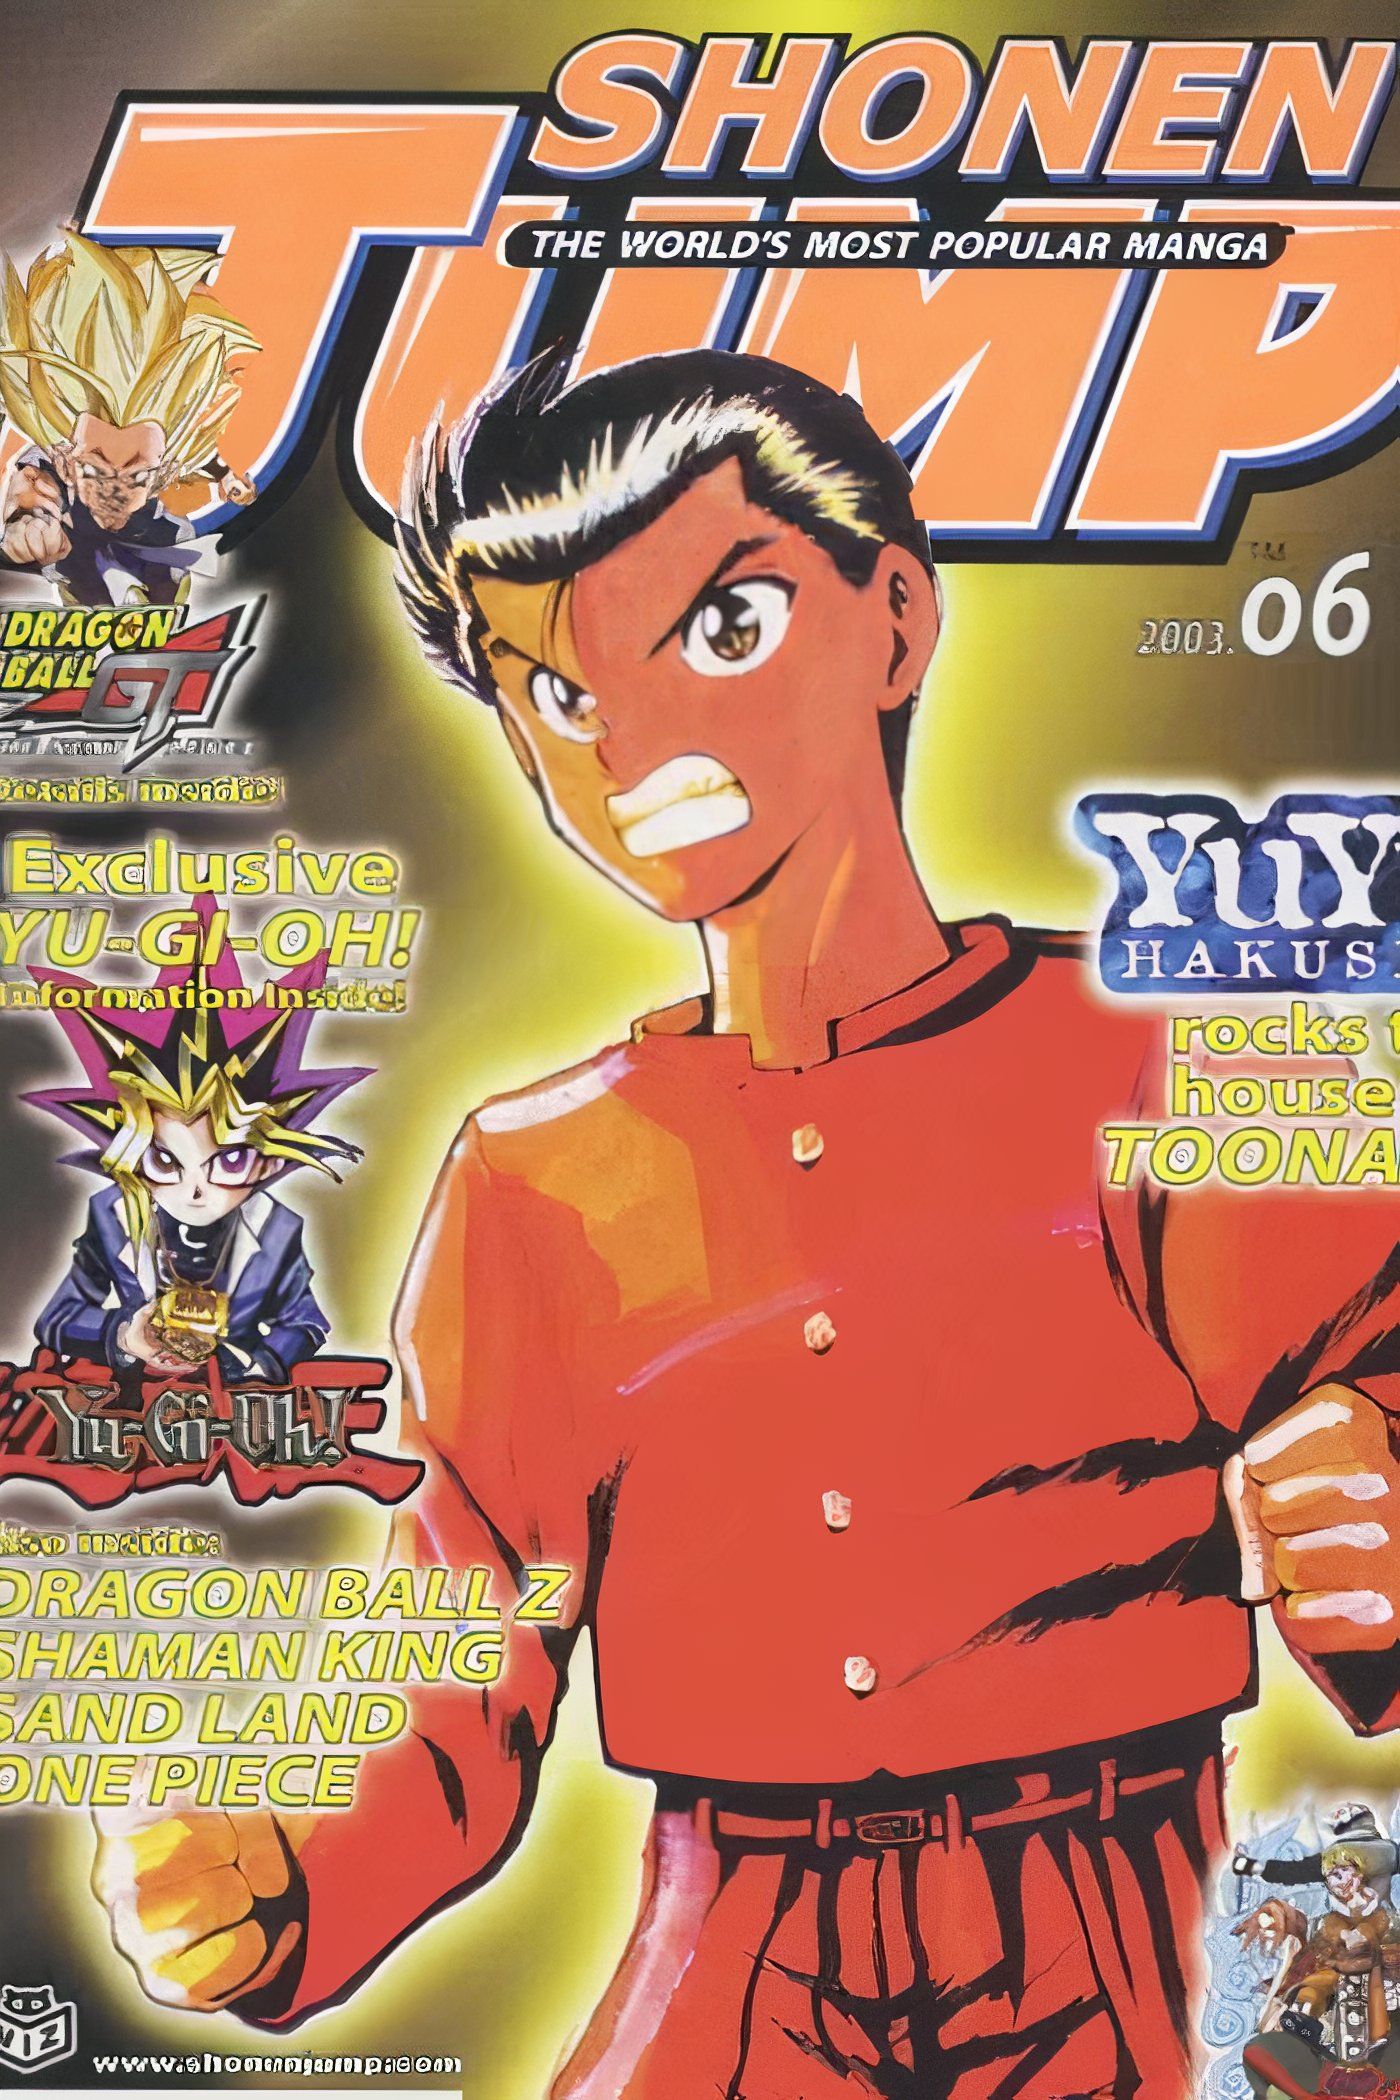 American Weekly Shonen Jump 6 featuring Yusuke Urameshi from Yu Yu Hakusho